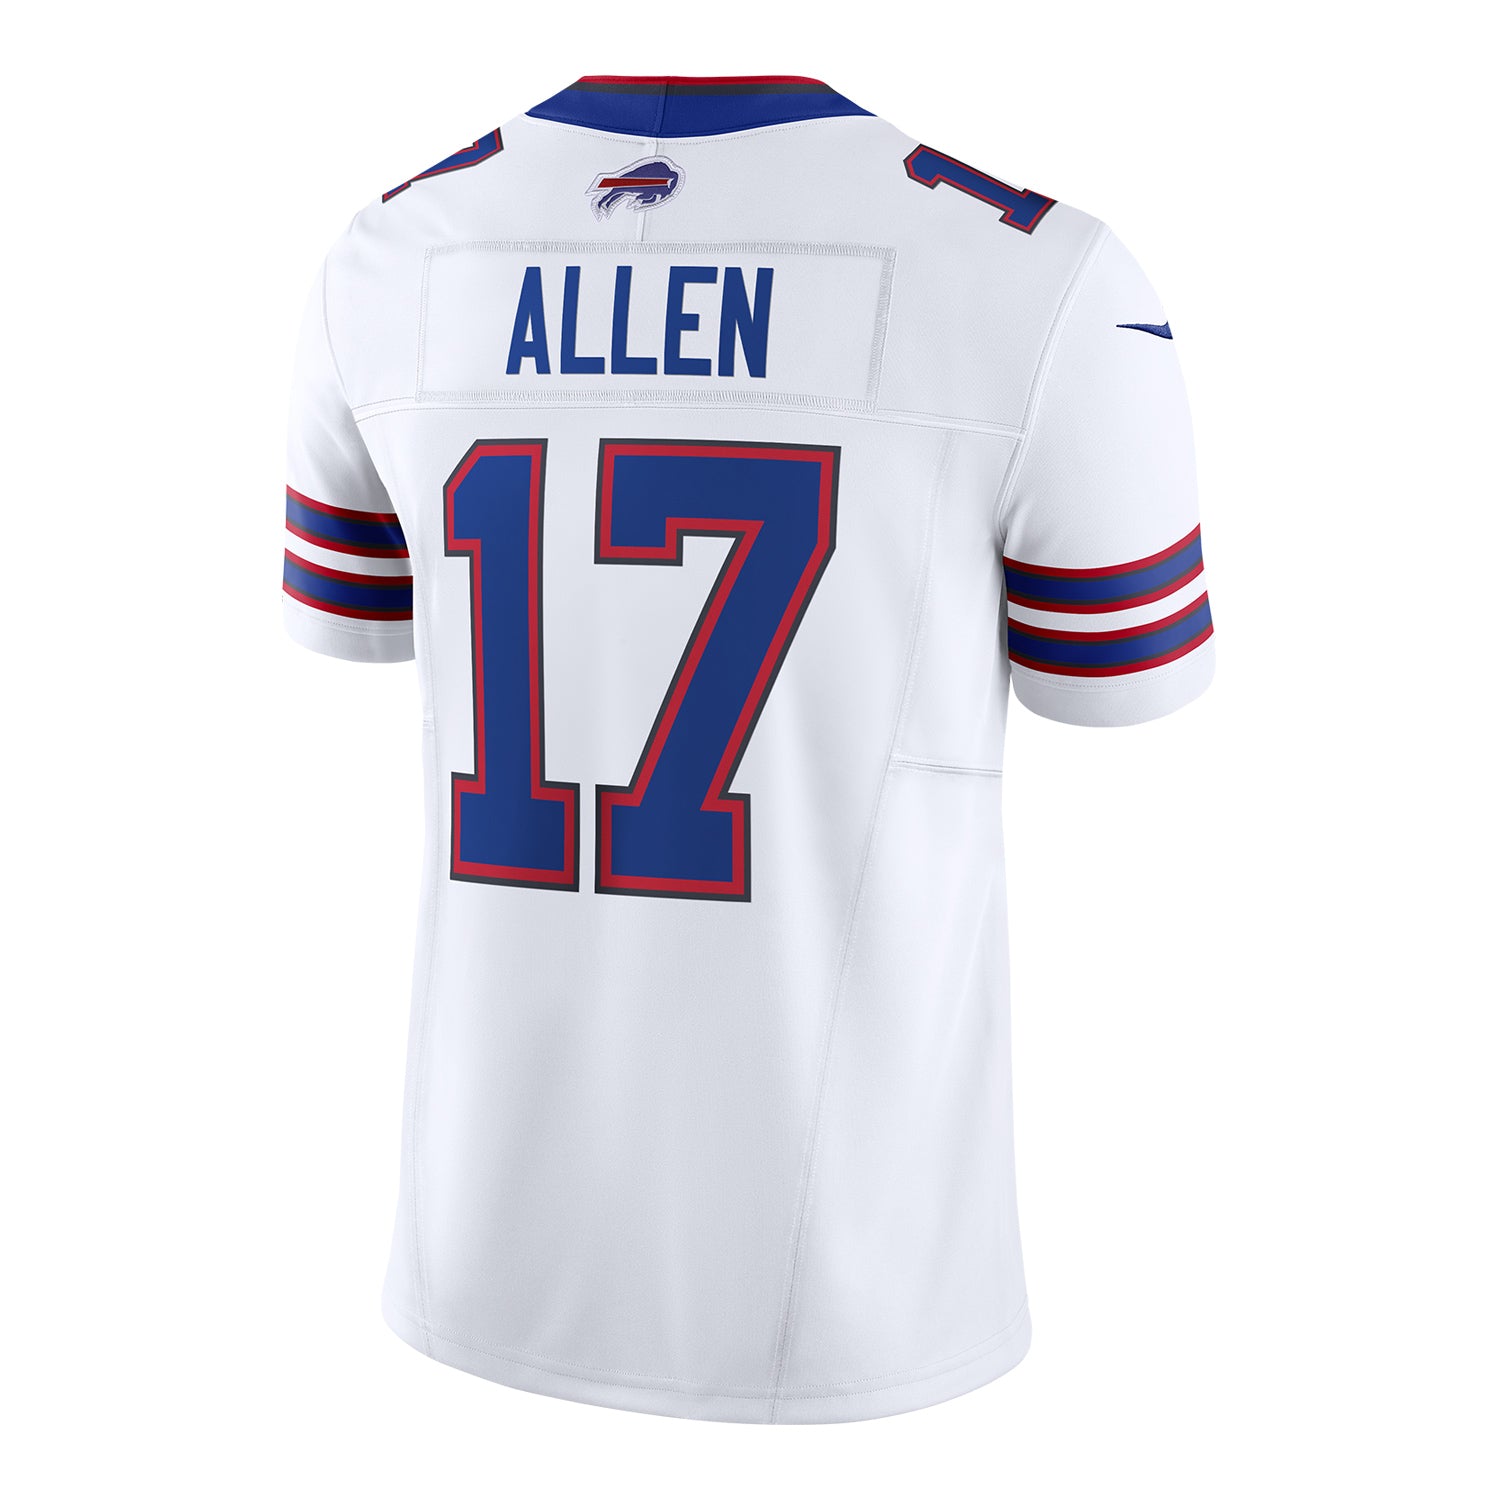 Buffalo Bills' Josh Allen jersey among NFL's best selling